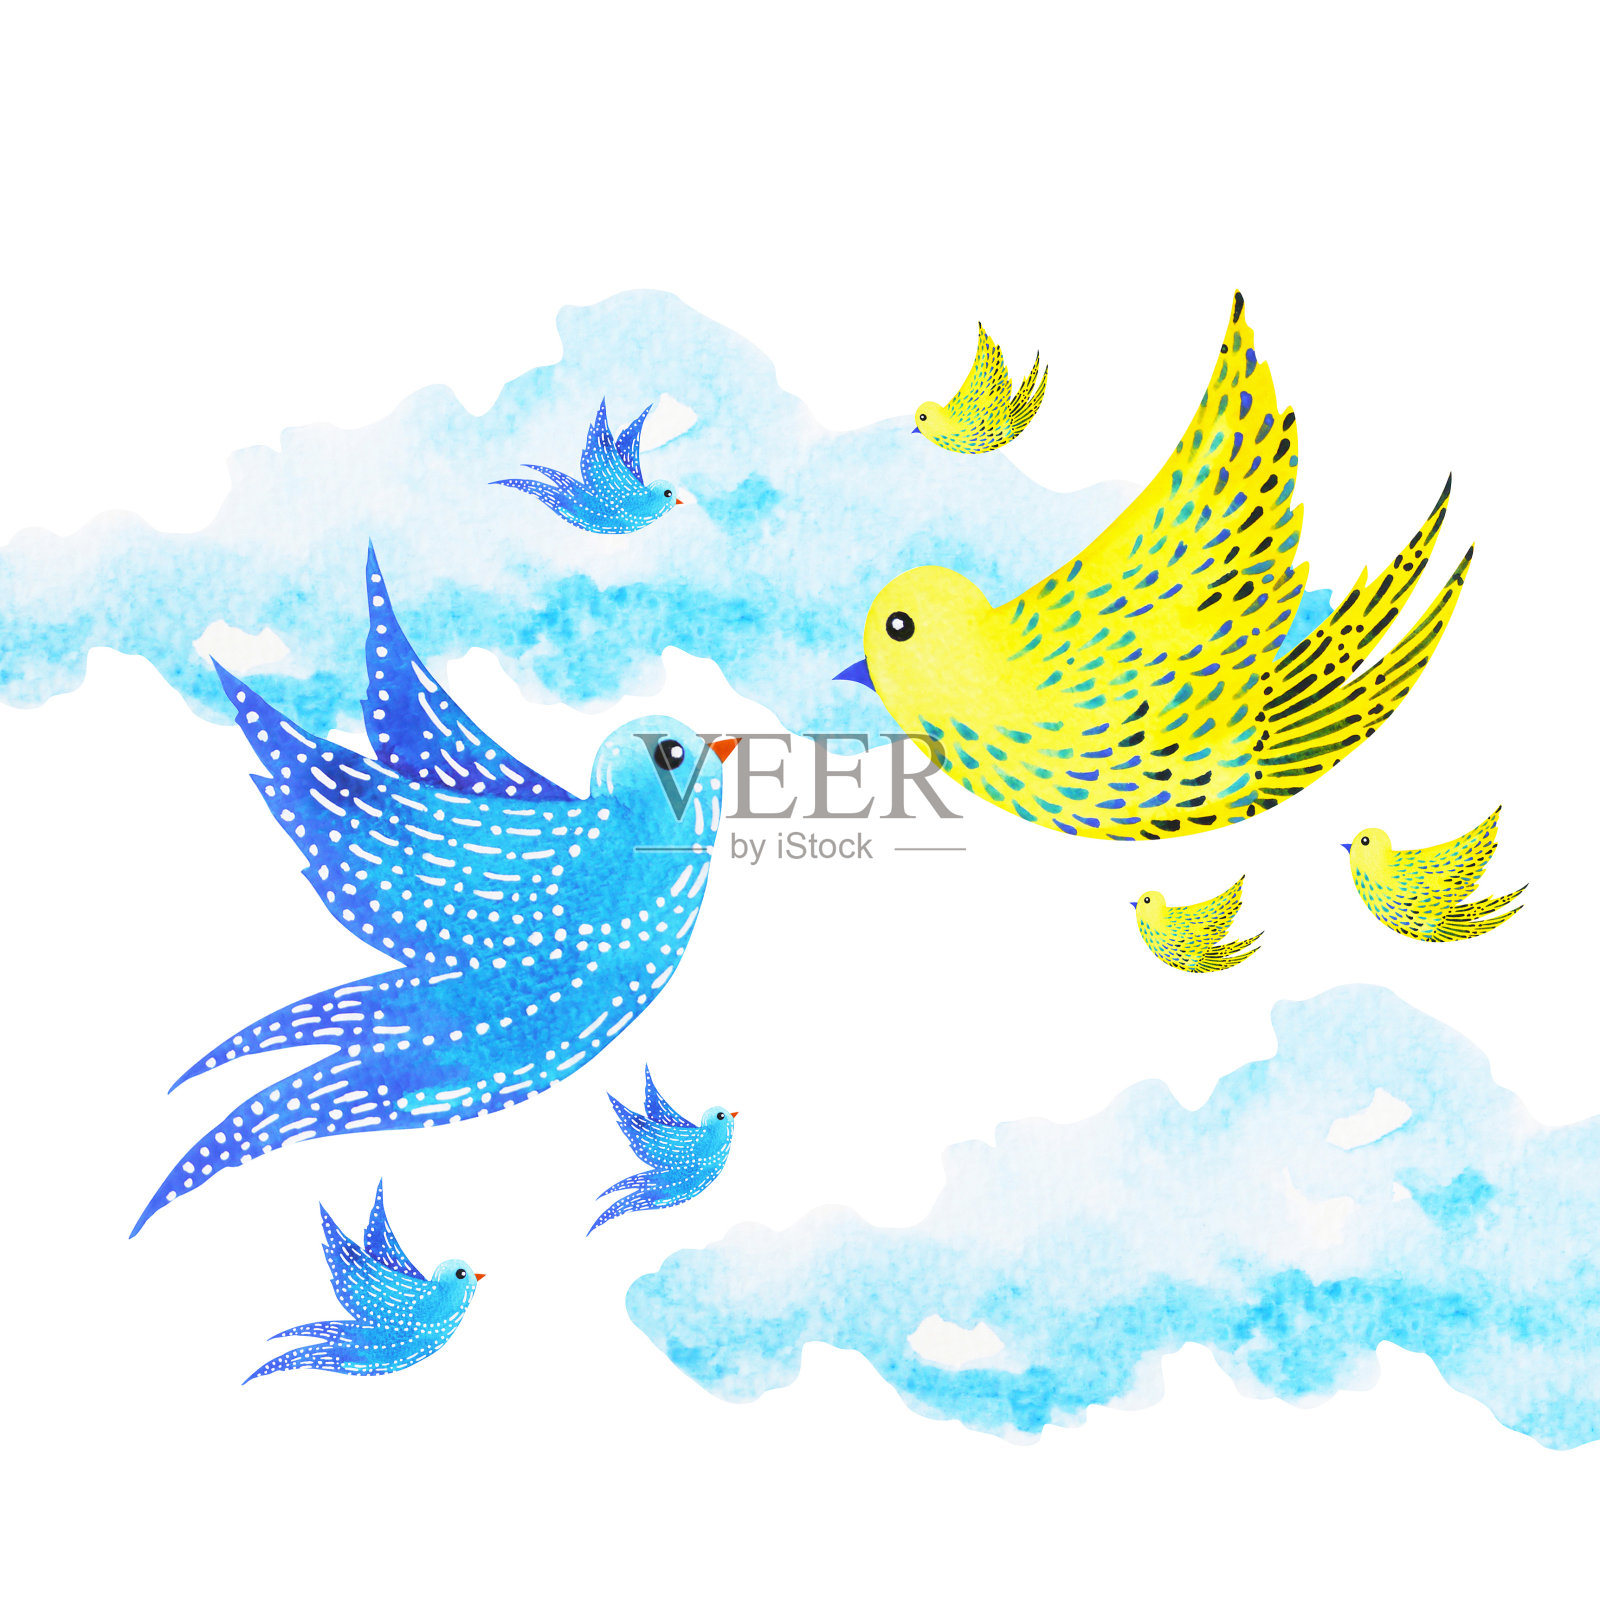 可爱的情侣恋人自由飞翔的小鸟在天空中，水彩画插画设计插画图片素材